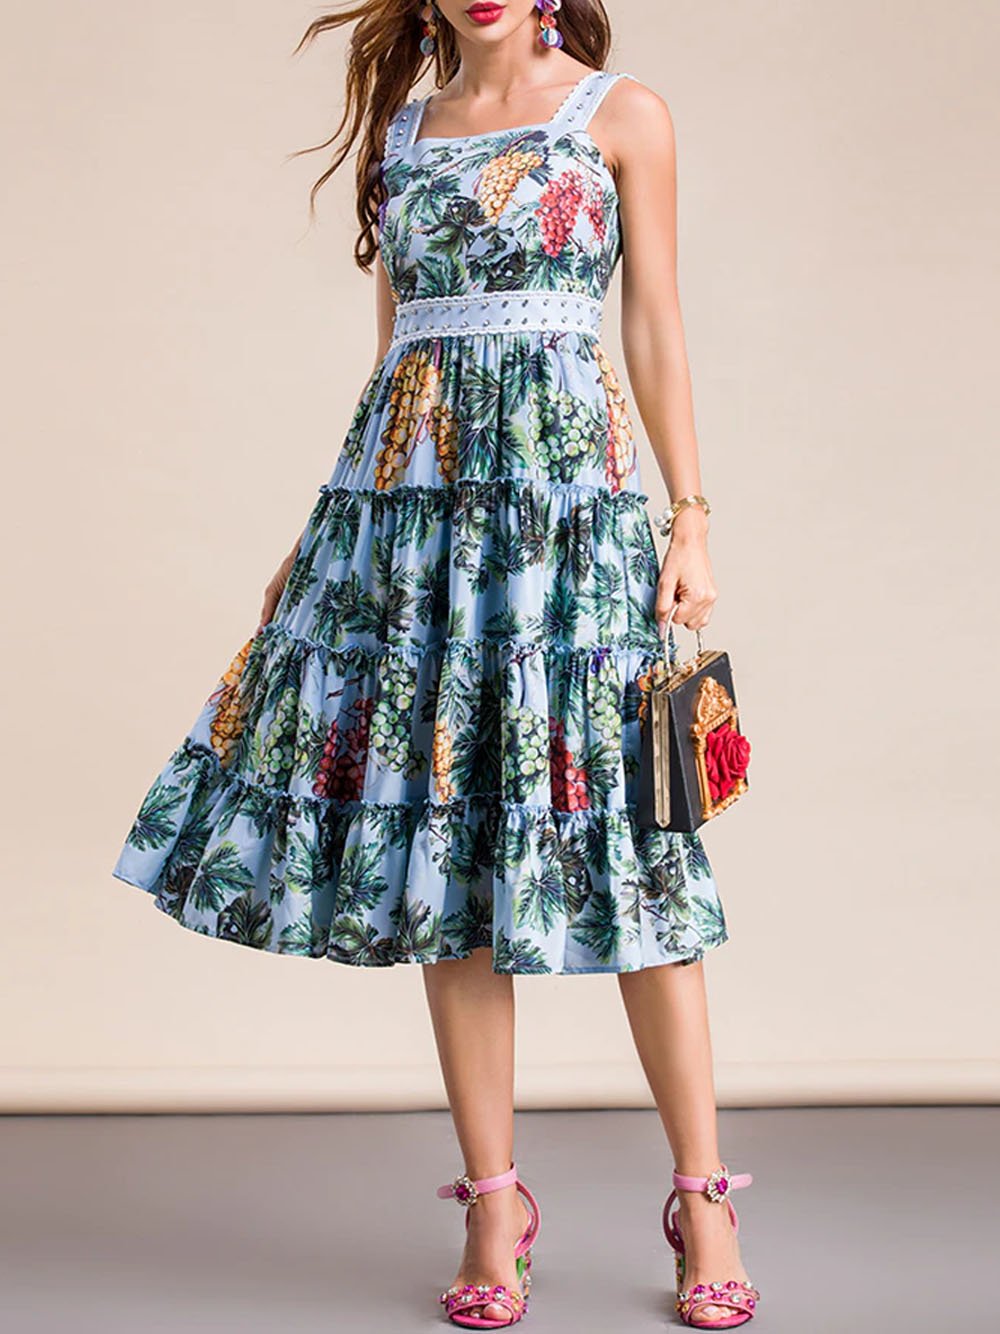 ROCKIA Floral Midi Dress